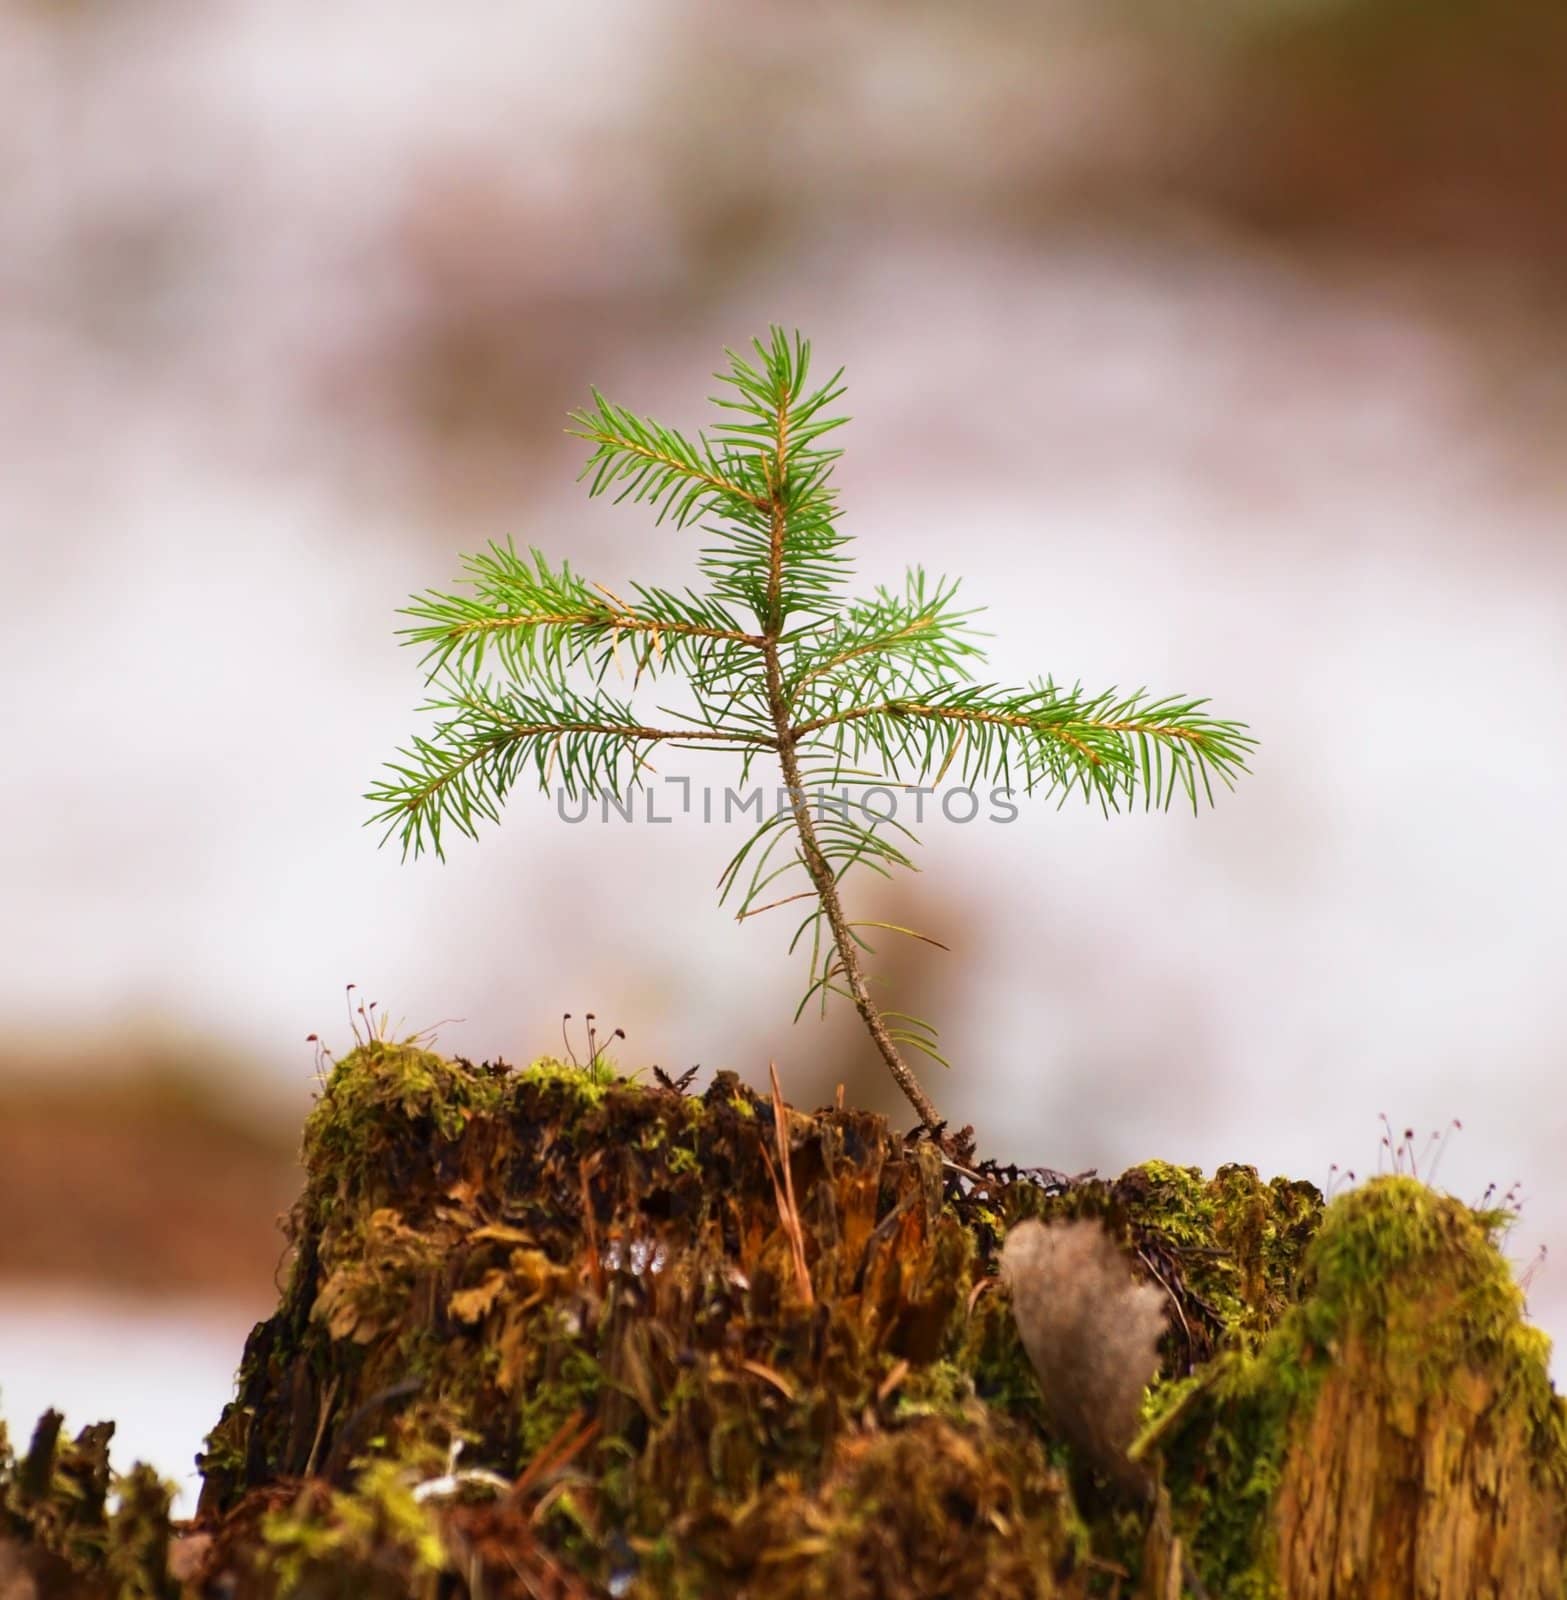 Spruce tree by Arvebettum